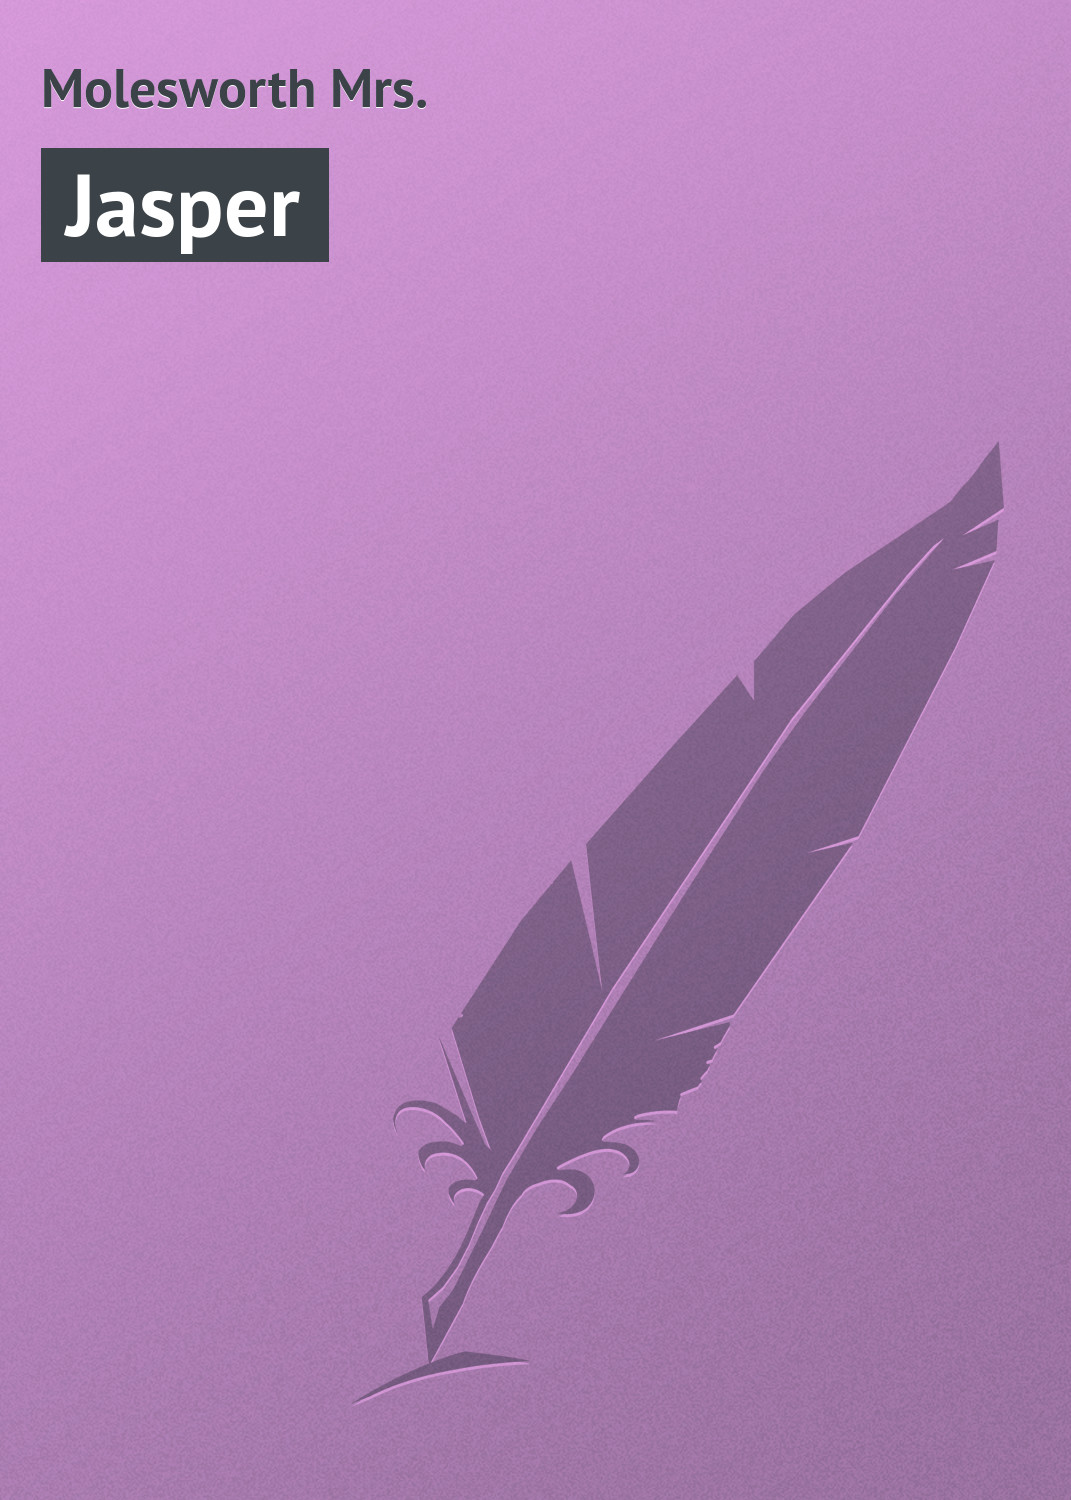 Книга Jasper из серии , созданная Mrs. Molesworth, может относится к жанру Зарубежная классика, Зарубежные детские книги. Стоимость электронной книги Jasper с идентификатором 23161995 составляет 5.99 руб.